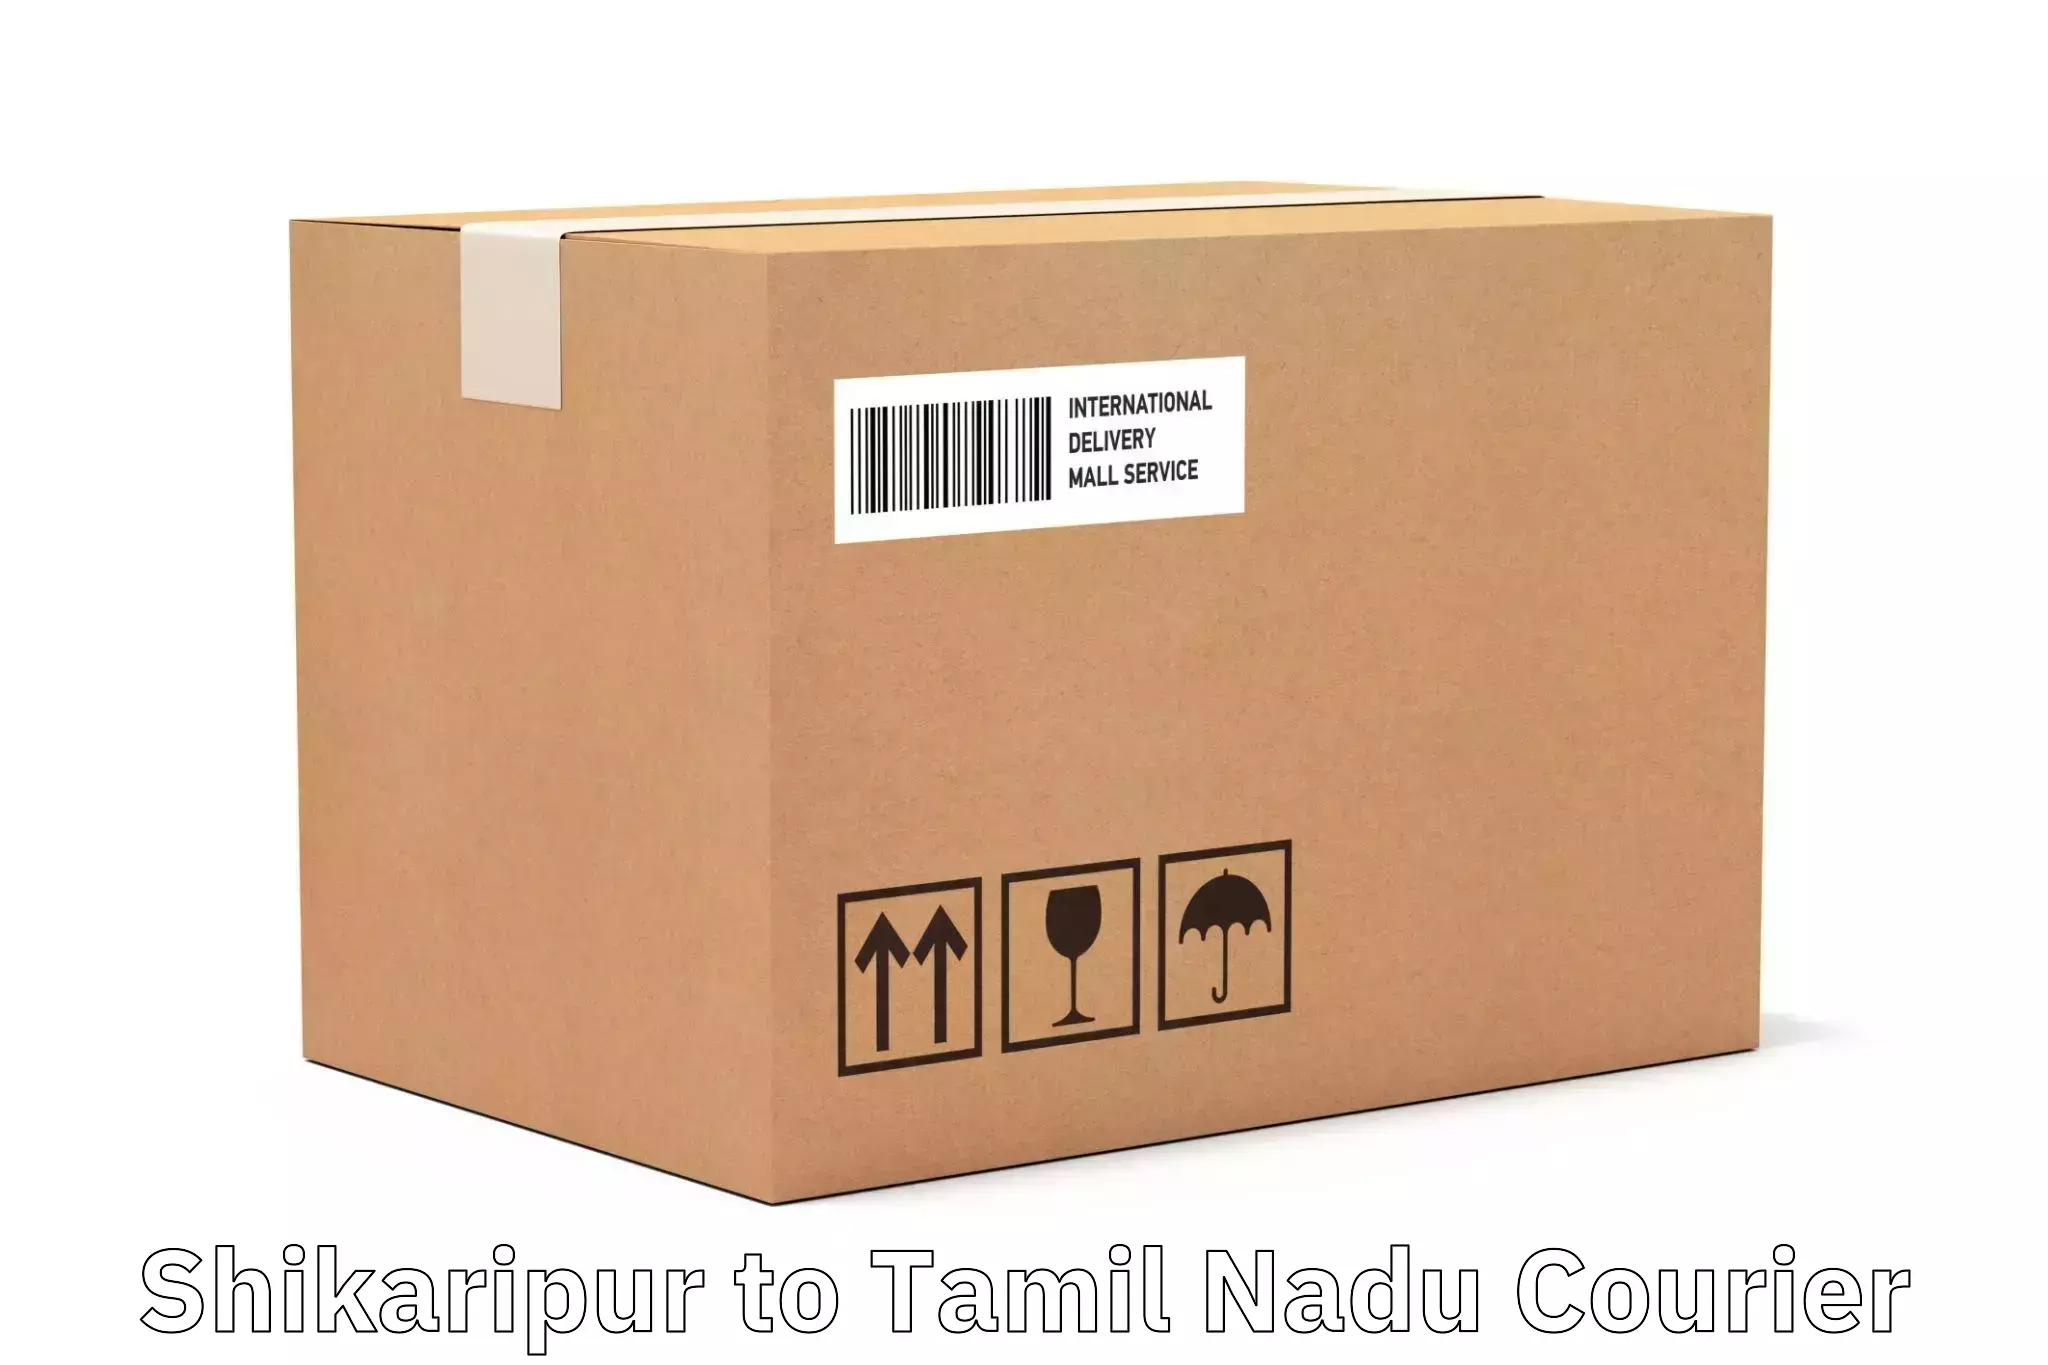 Full-service courier options Shikaripur to Memalur